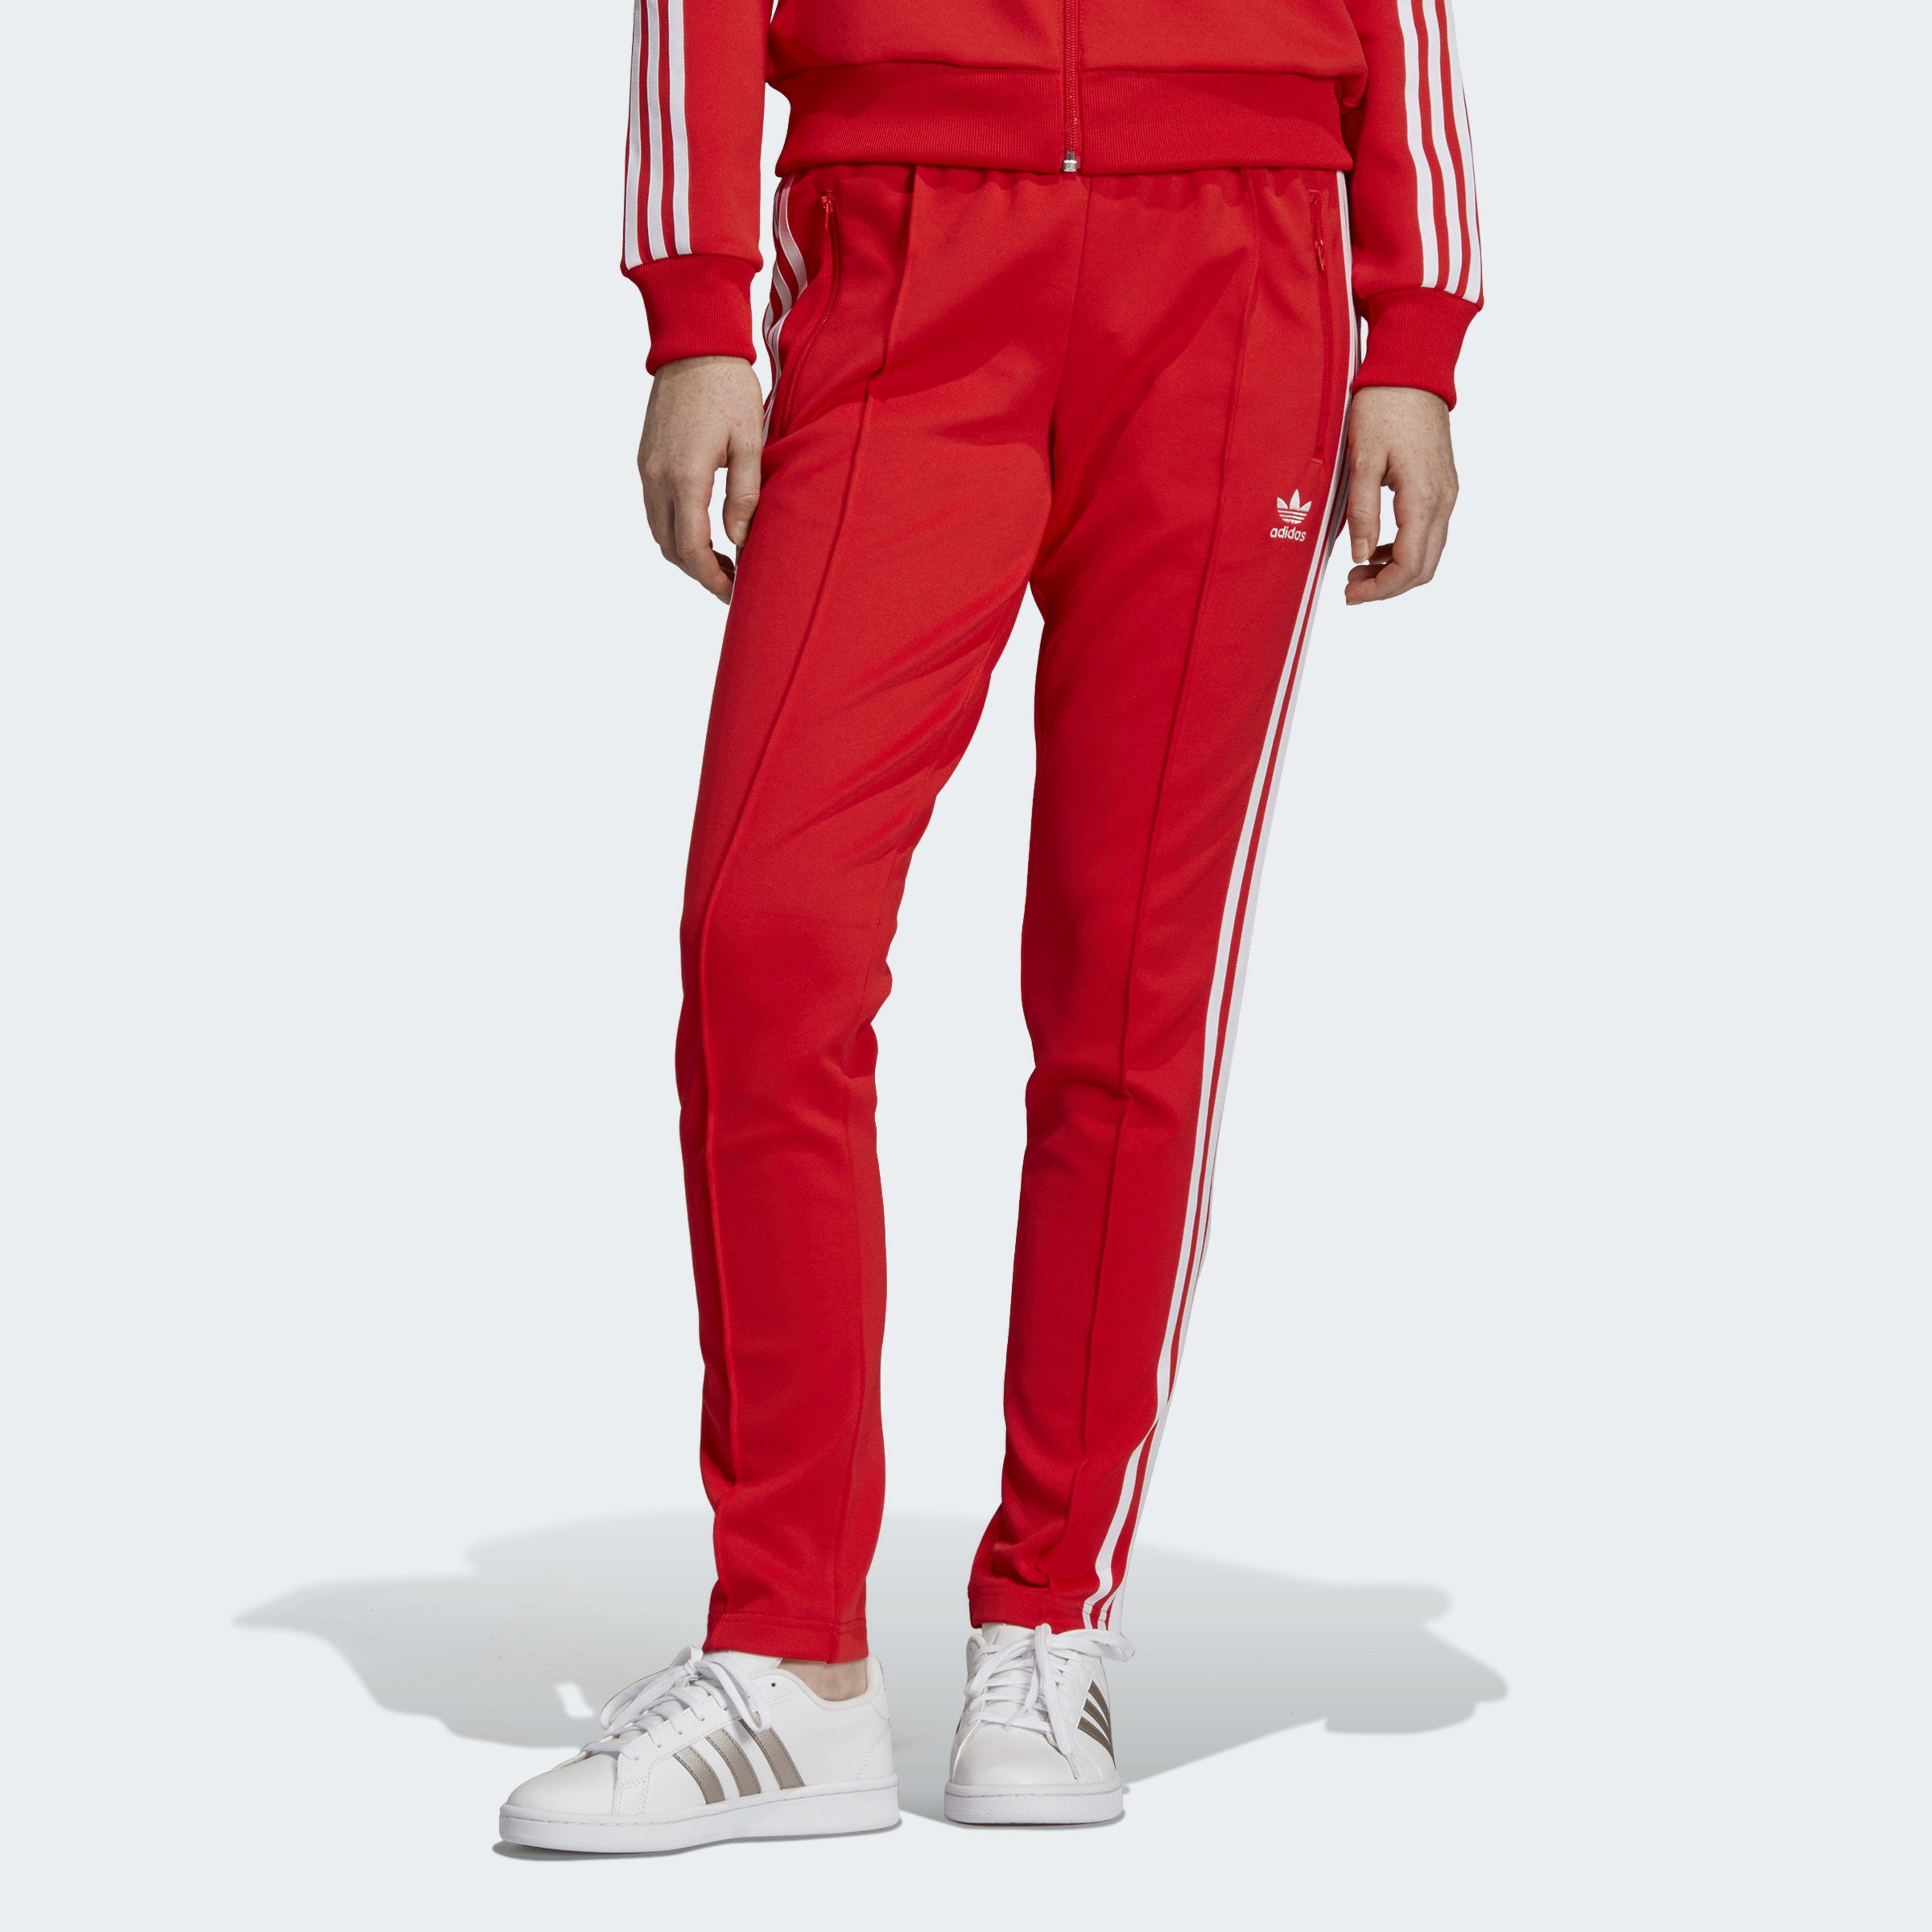 Красные штаны адидас. Красные спортивки адидас. Спортивные брюки adidas SST Pants PB. Штаны адидас Essentials 3 оригинал красный. Спортивки adidas Originals красные.